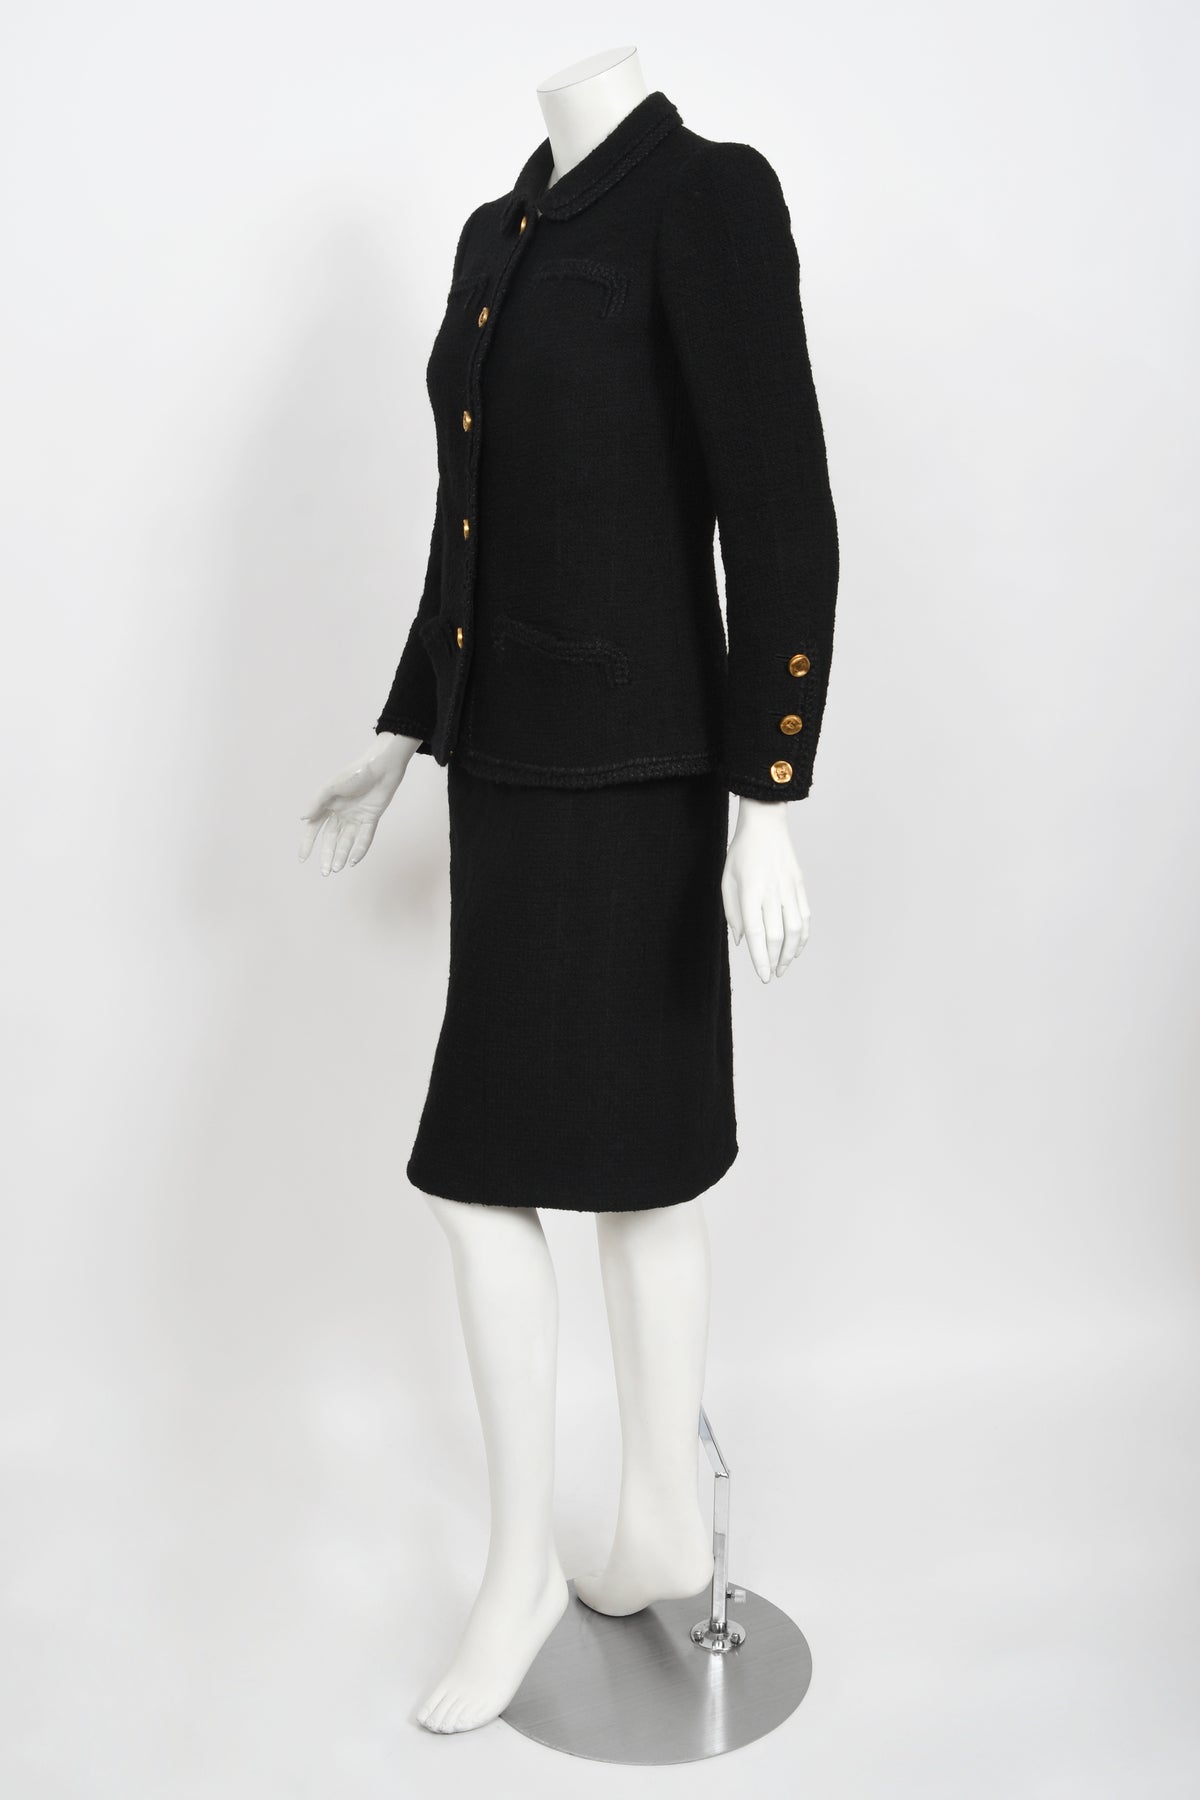 1973 Chanel Haute Couture Black Boucle Wool Logo Buttons Jacket Suit -  Timeless Vixen